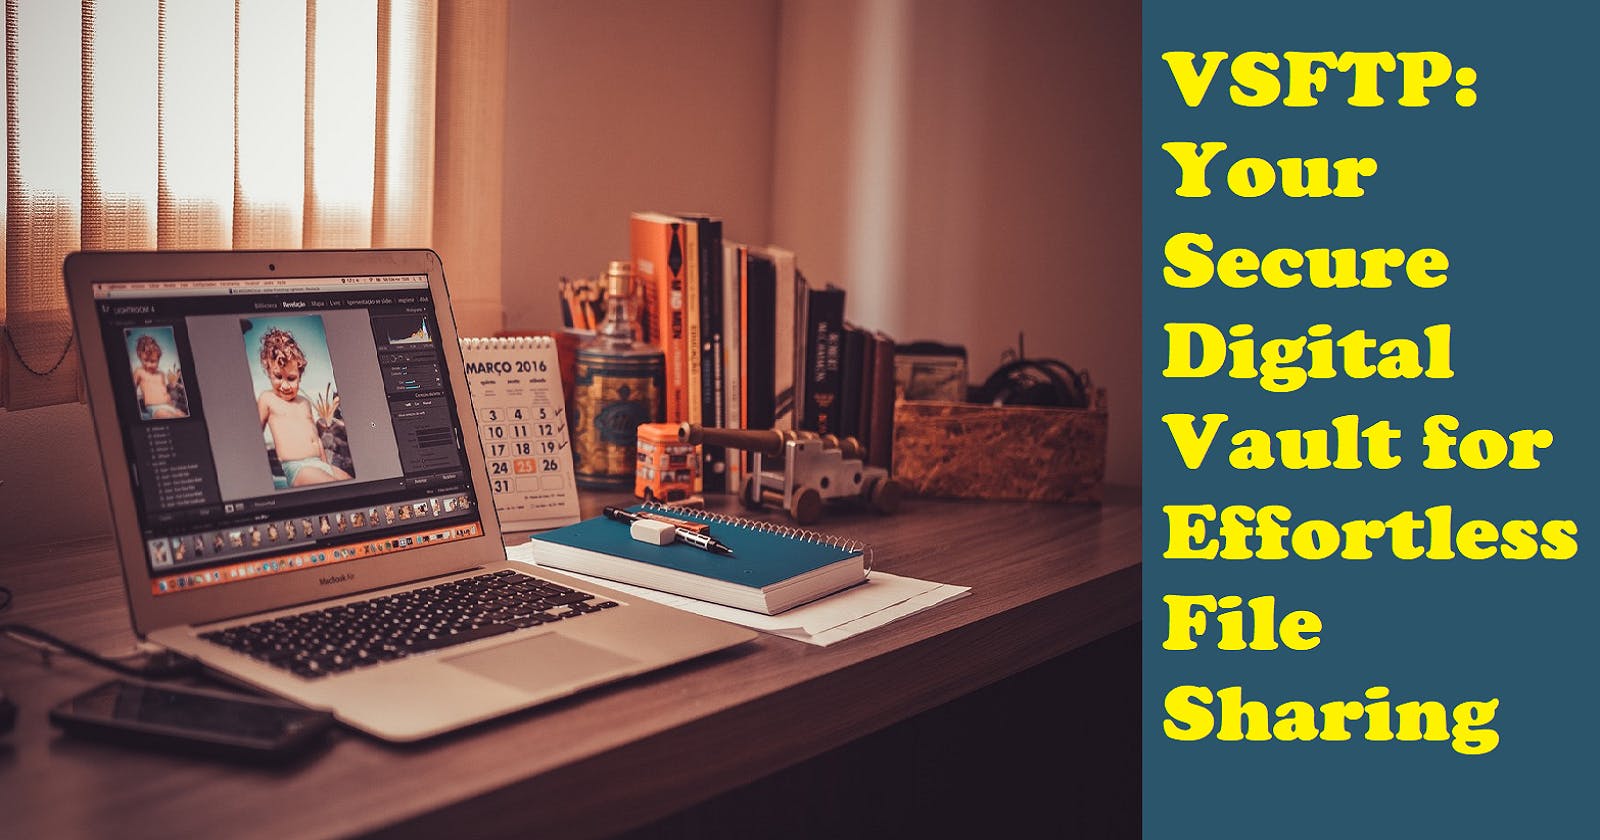 VSFTP: Your Secure Digital Vault for Effortless File Sharing